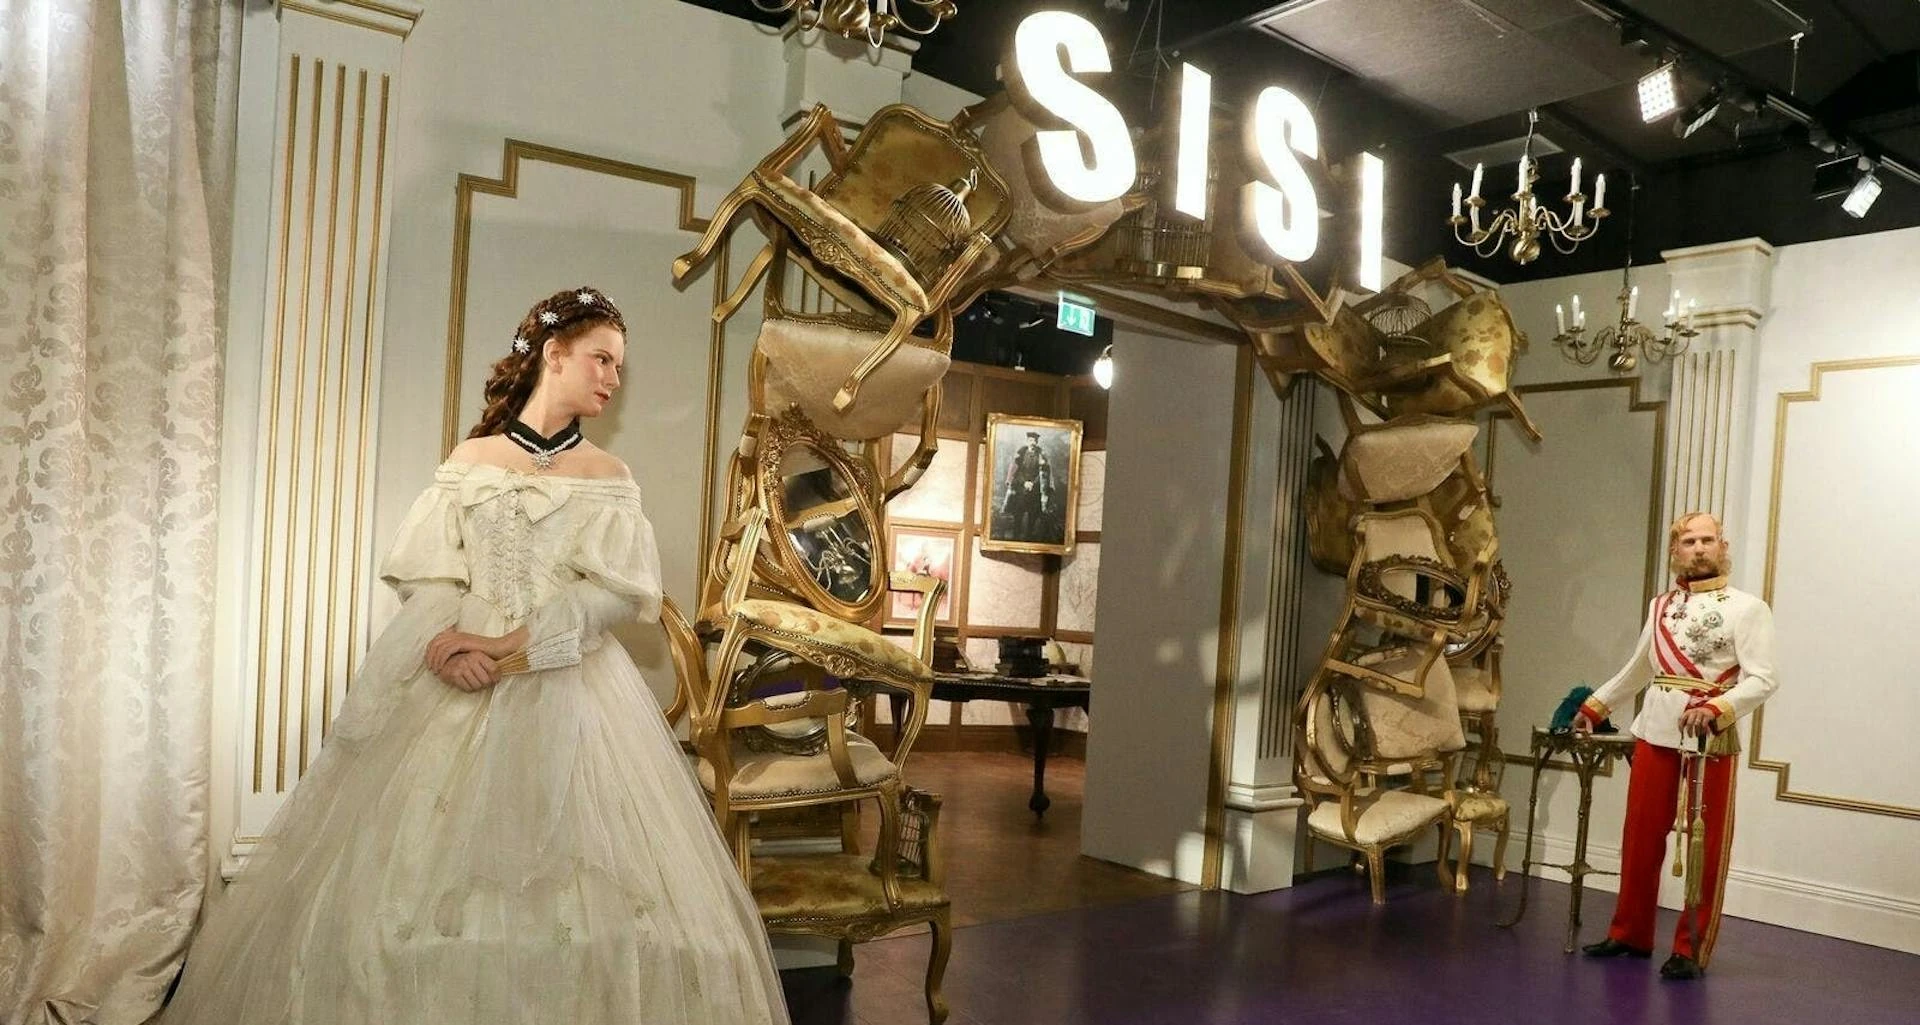 Madame Tussauds Wien - goldener Eingangsbereich in den königlichen Sisi-Themenbereich